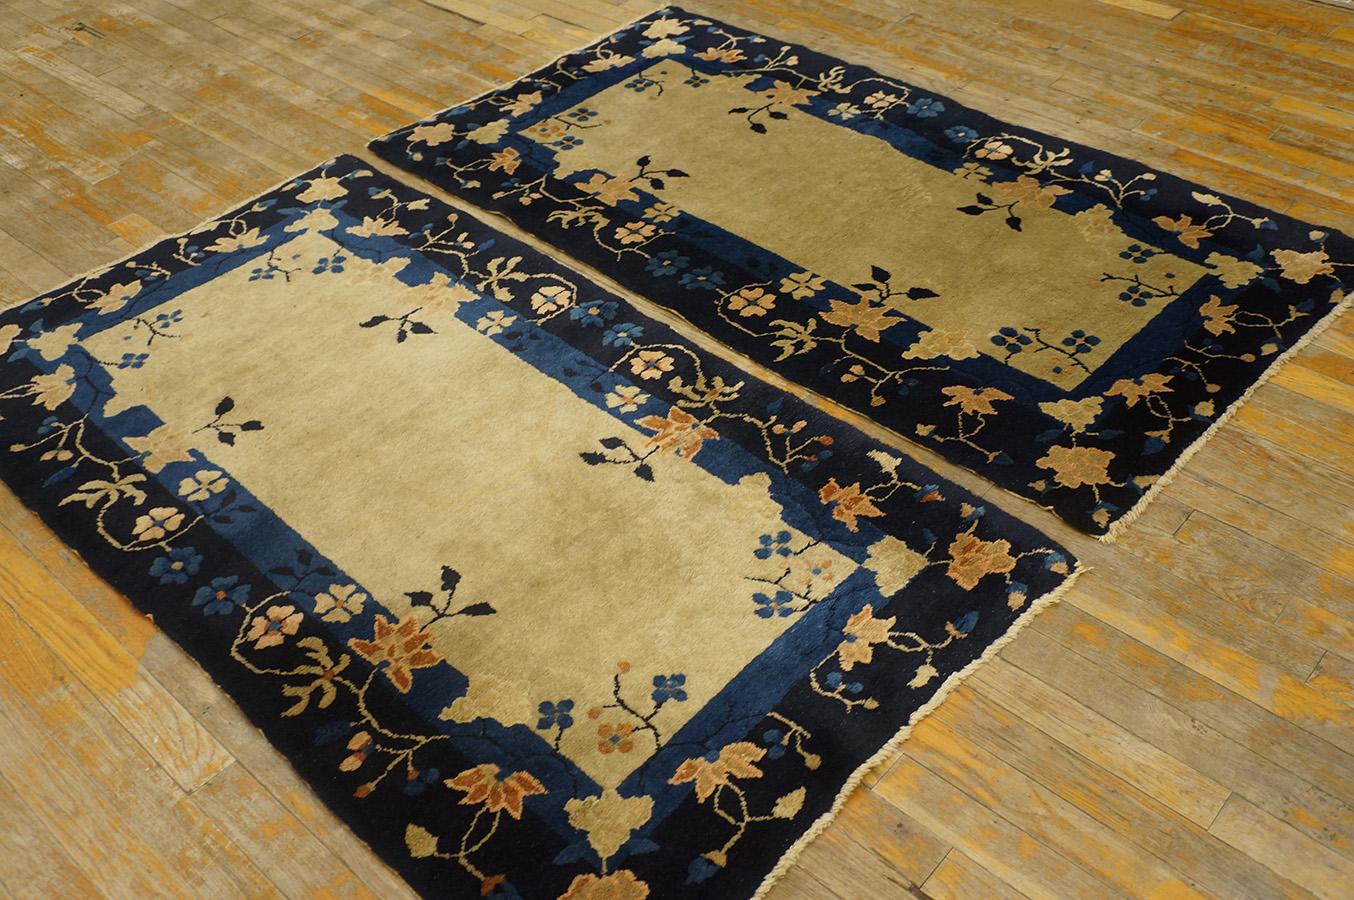 Antique Chinese peking rug, Size: 2' 6'' x 4' 9''.